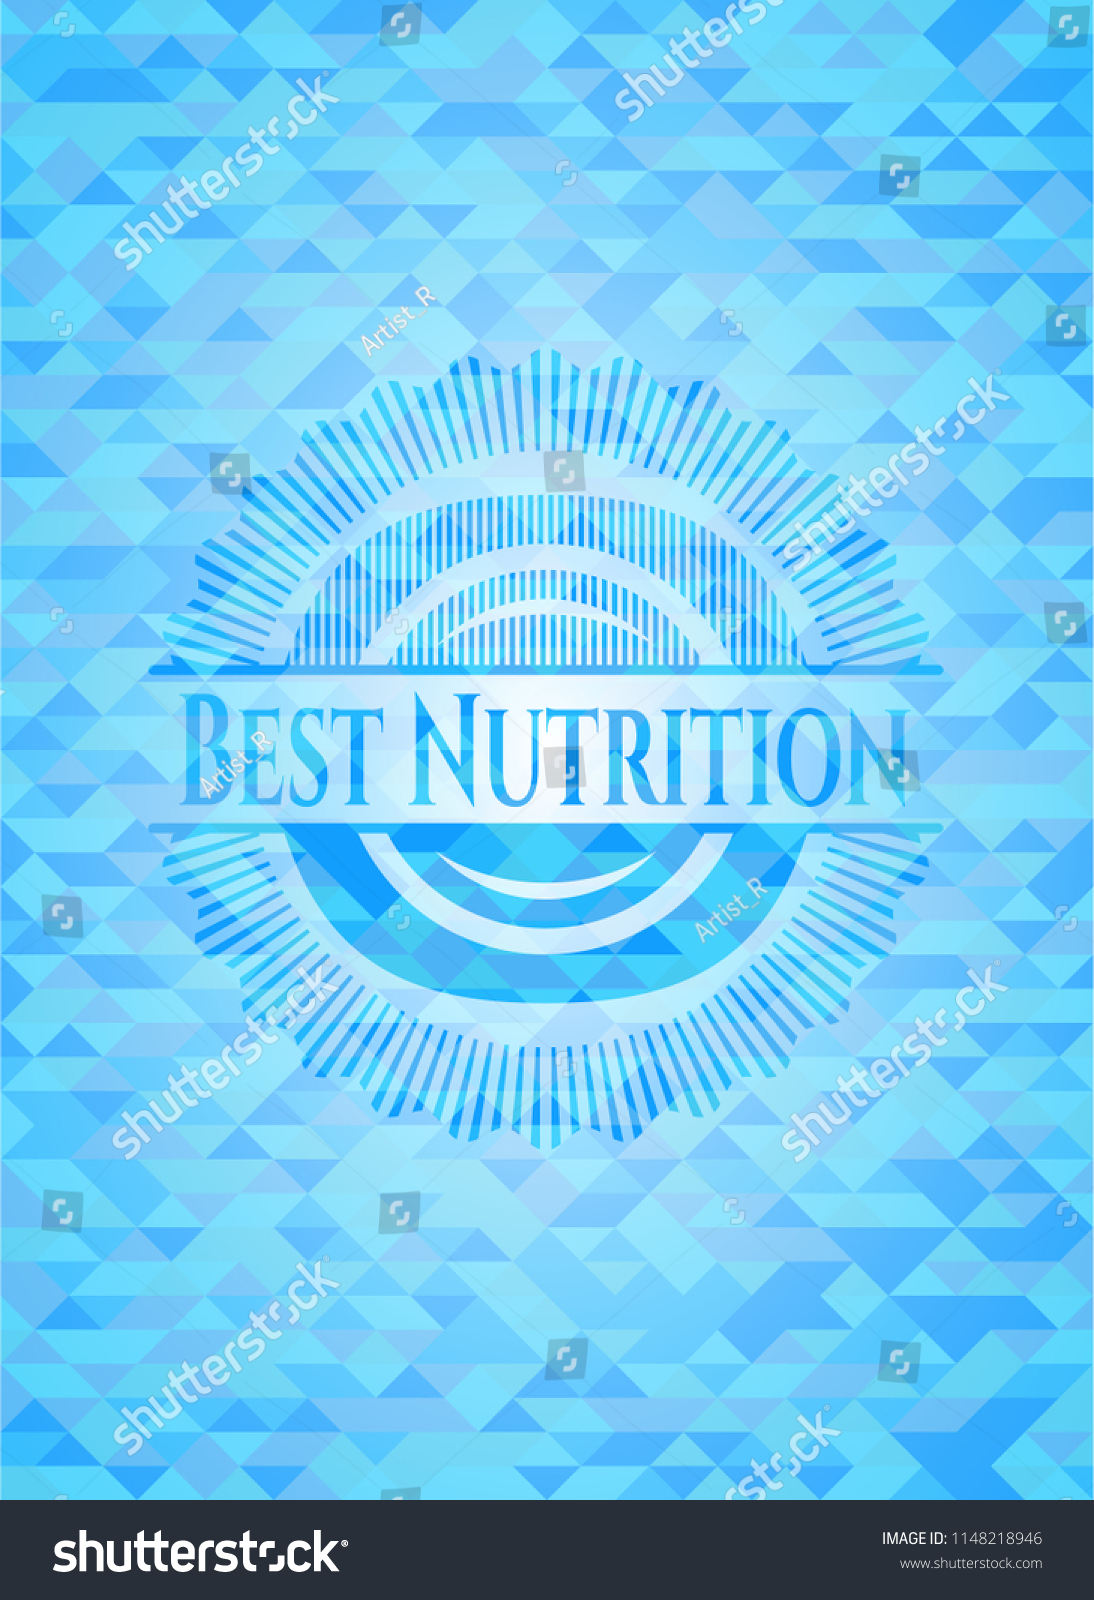 Best Nutrition realistic light blue mosaic emblem #1148218946